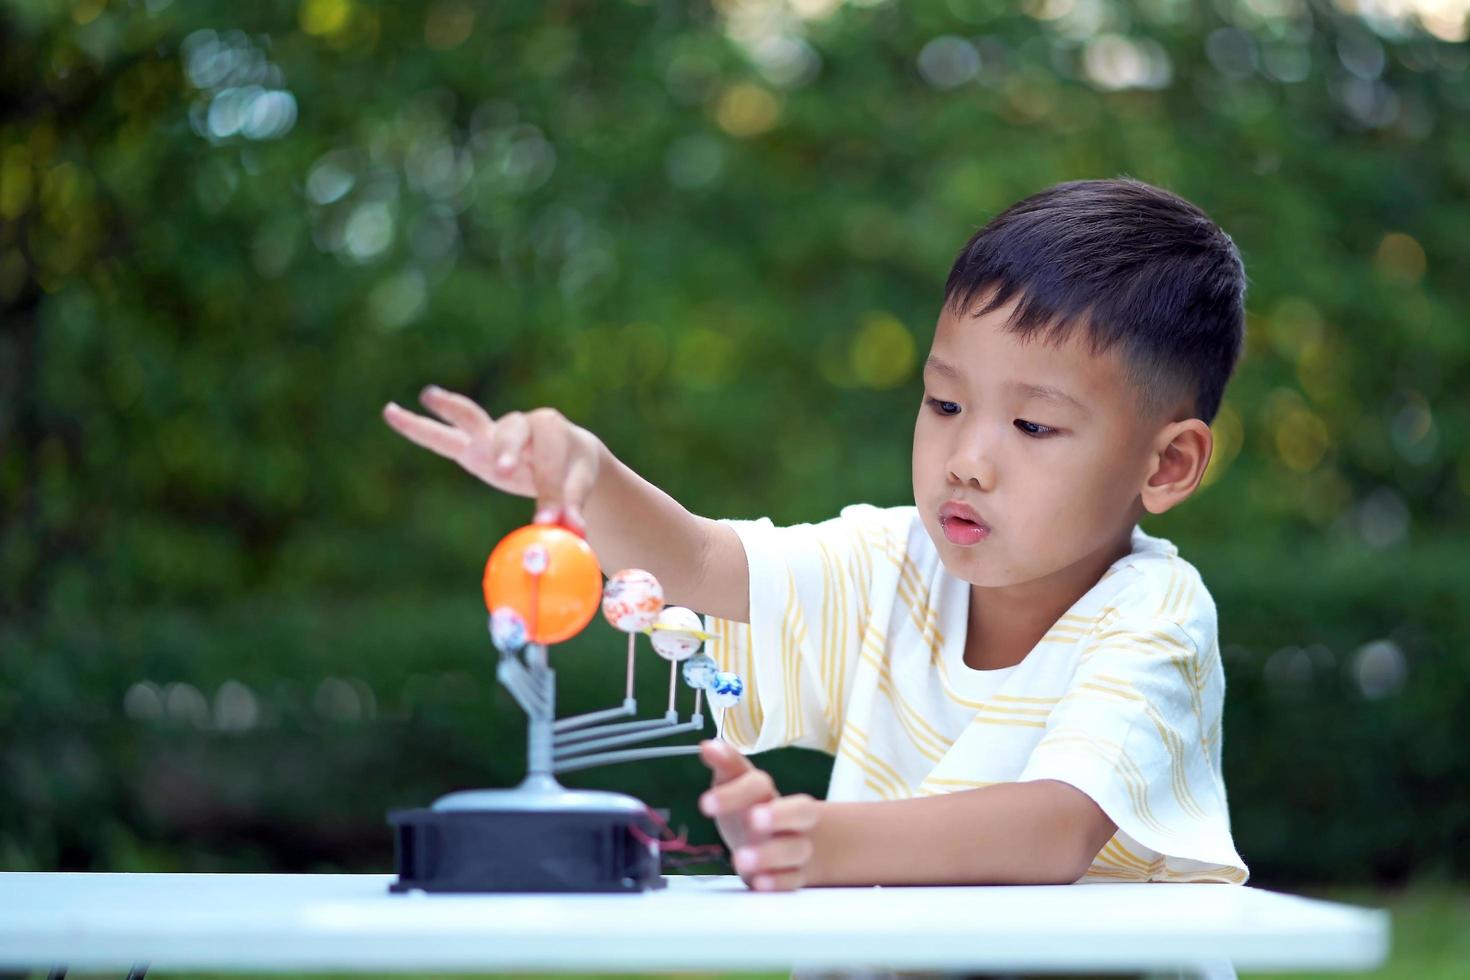 asian boy living solar system toys, home learning equipment, während neuer normaler Veränderungen nach dem Coronavirus oder einer Pandemie nach dem Ausbruch von Covid-19 foto